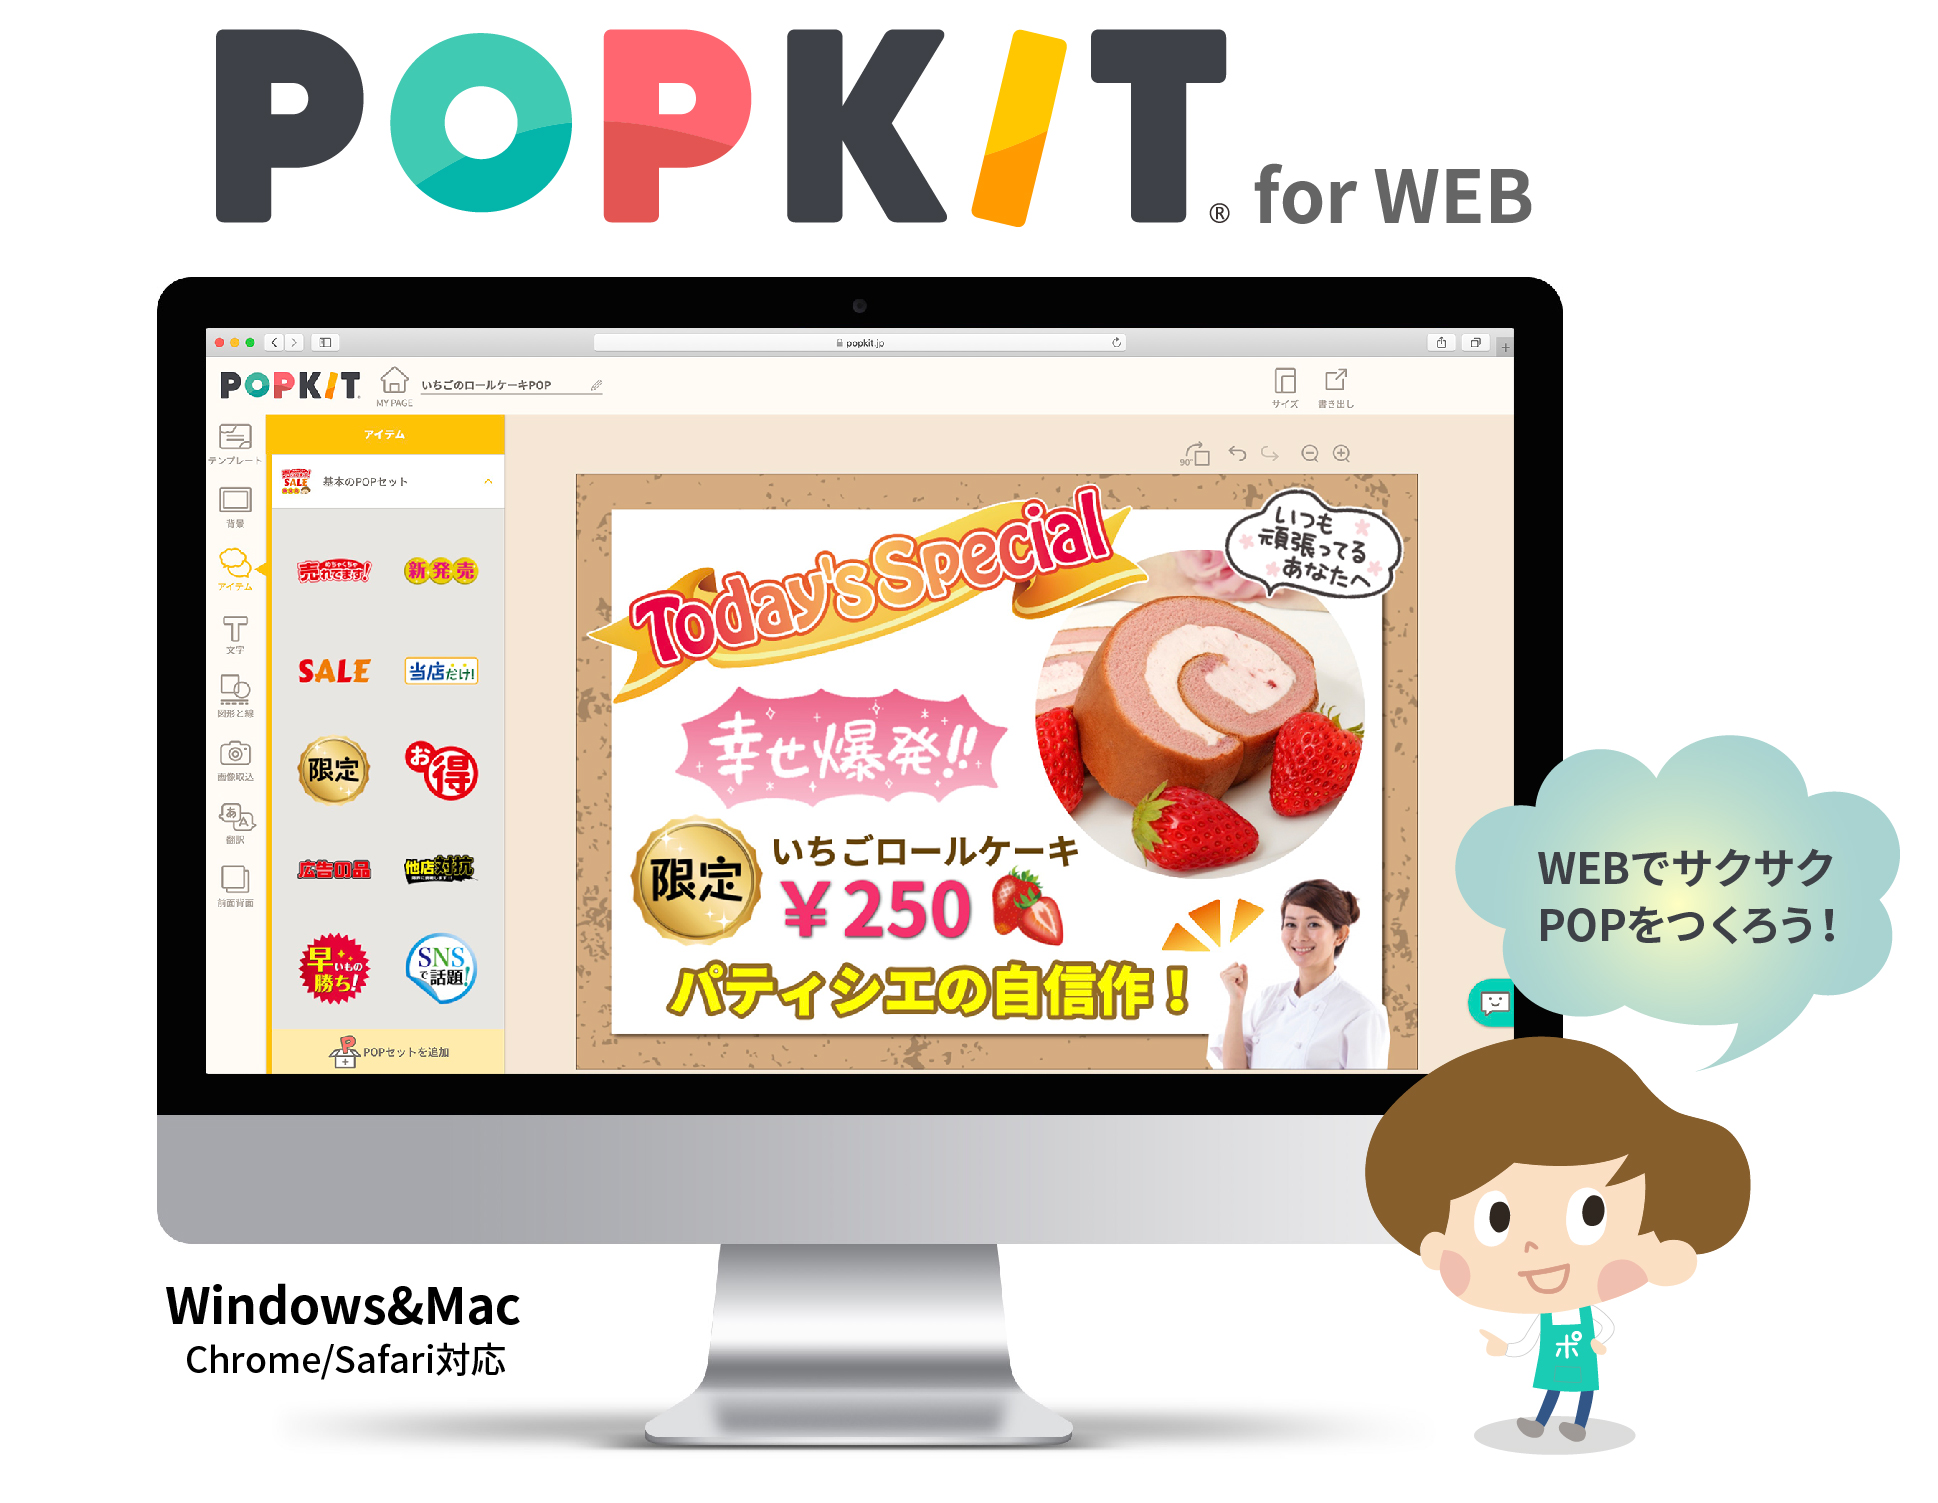 カンタンpop作成ツール Popkit シリーズに パソコンで使えるweb版がついに登場 Popkit For Web 9月17日サービス開始 Popkit株式会社のプレスリリース